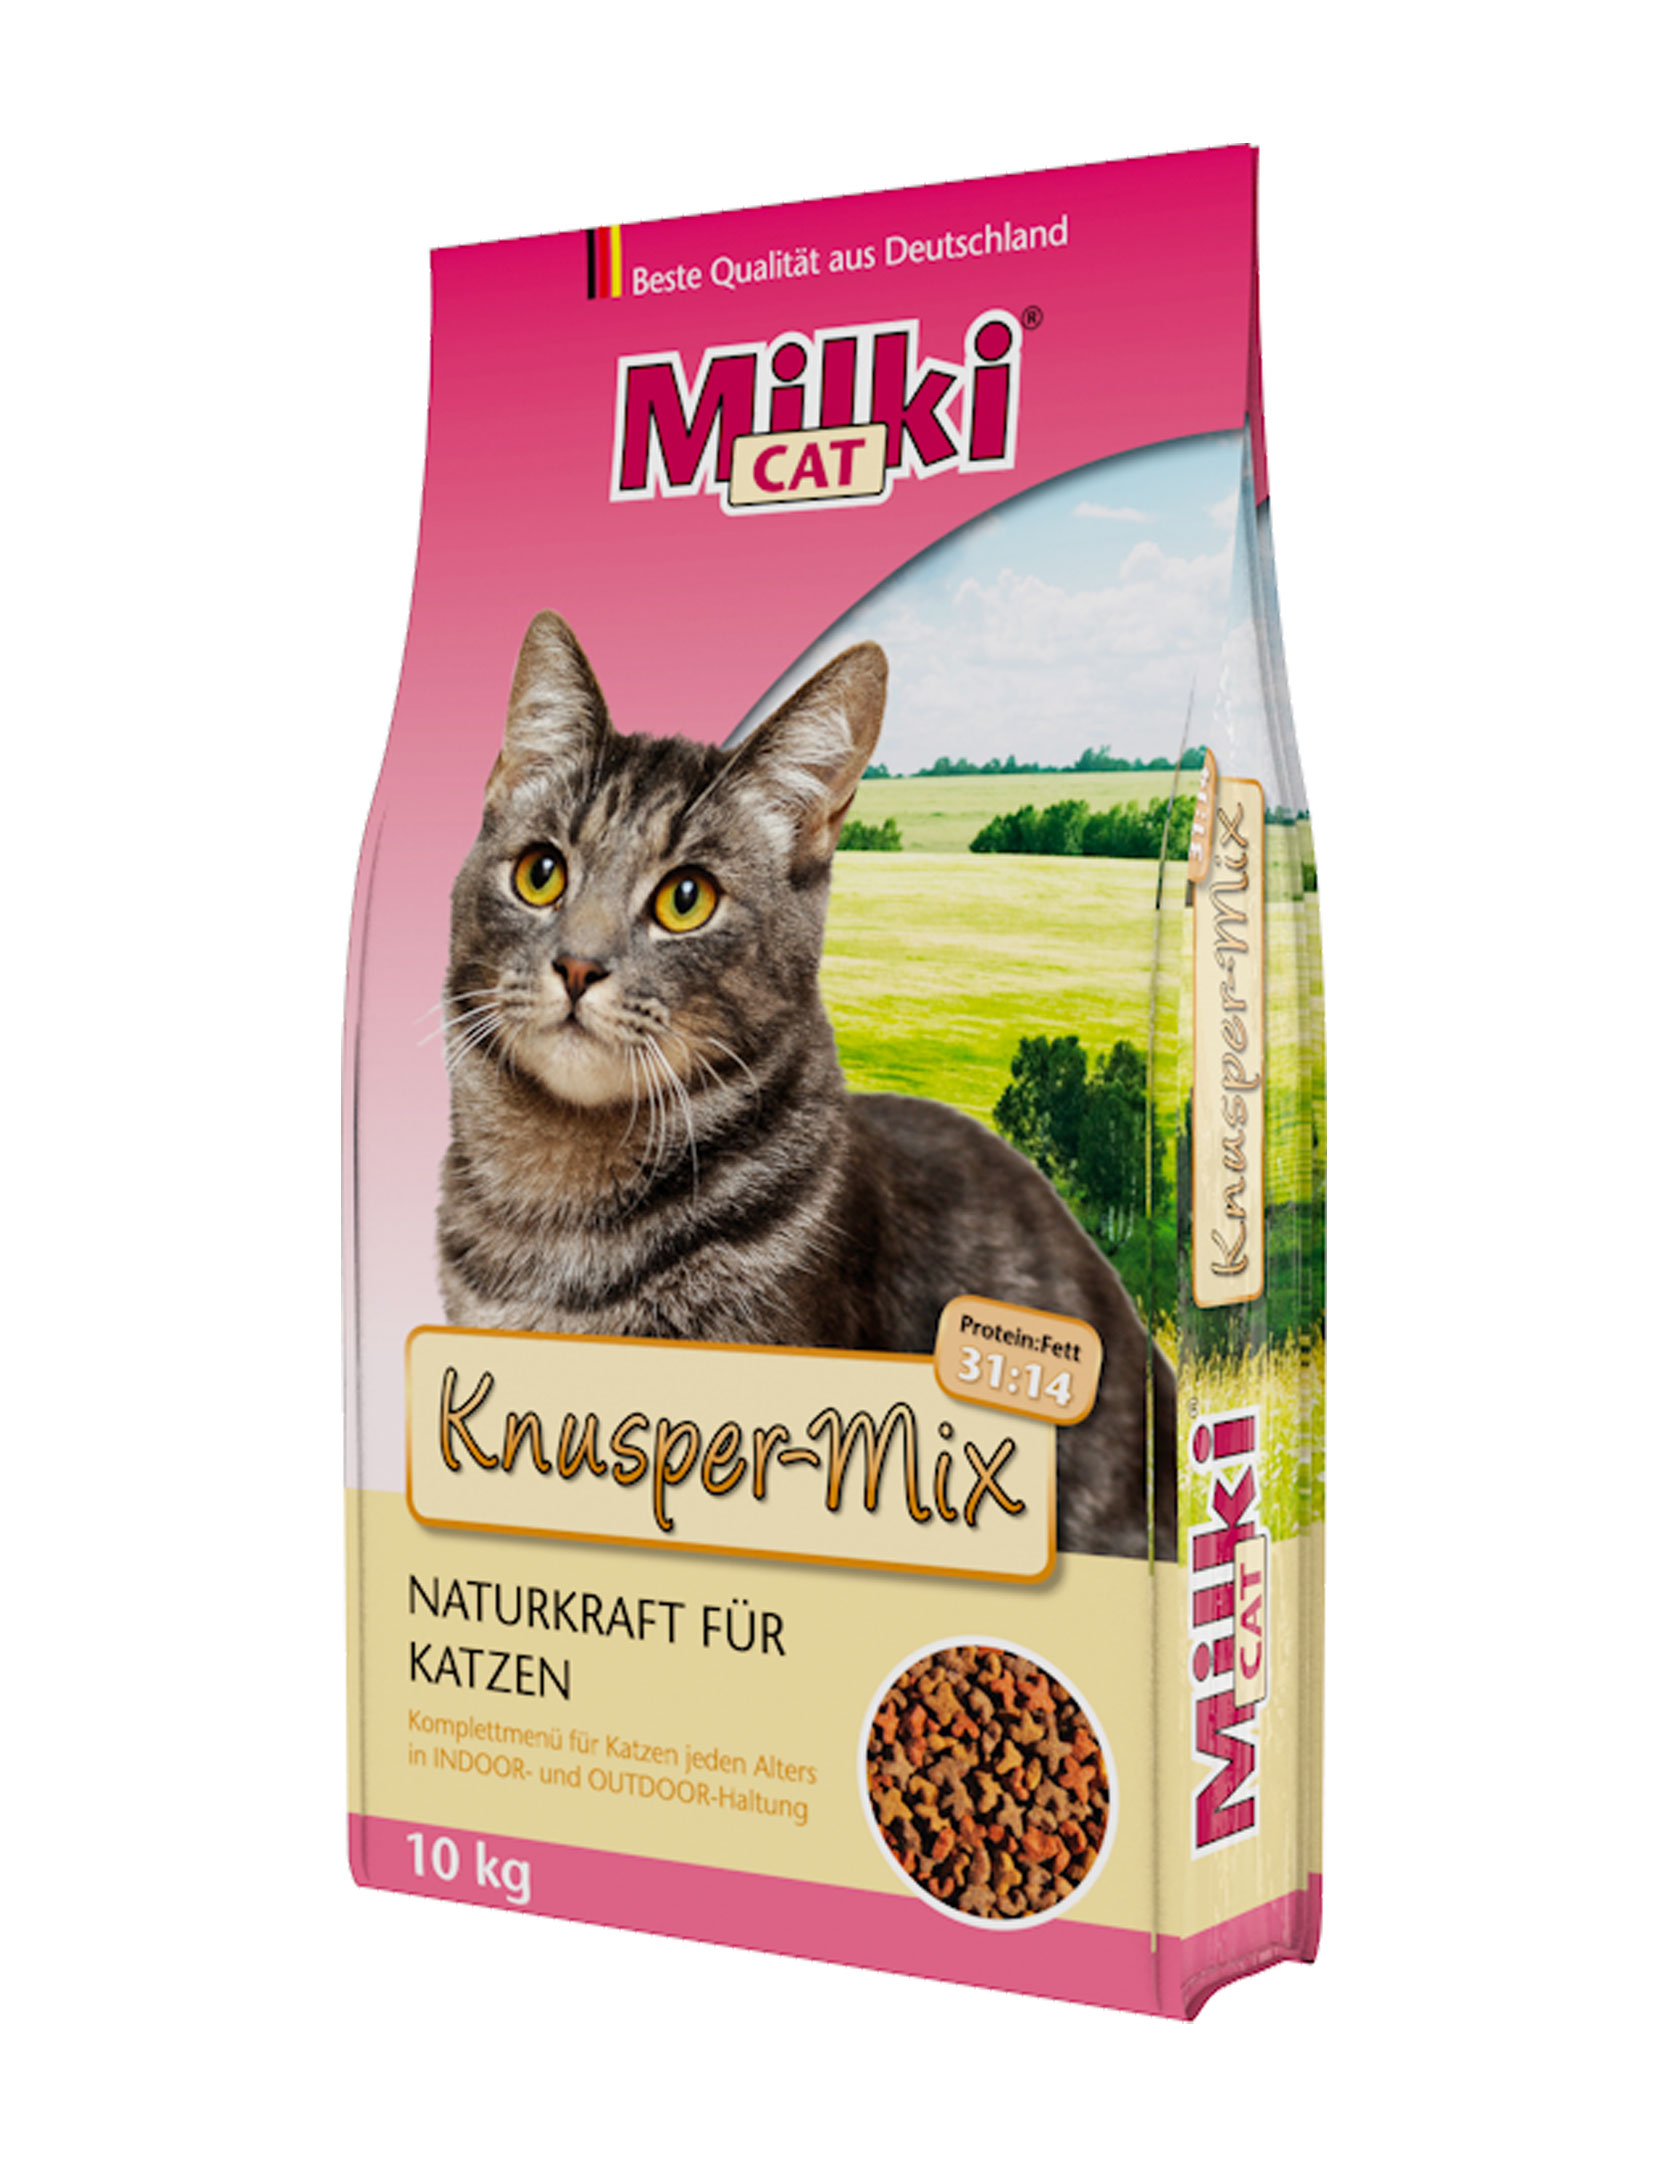 Milki Cat Knusper-Mix Katzenfutter - 10 kg